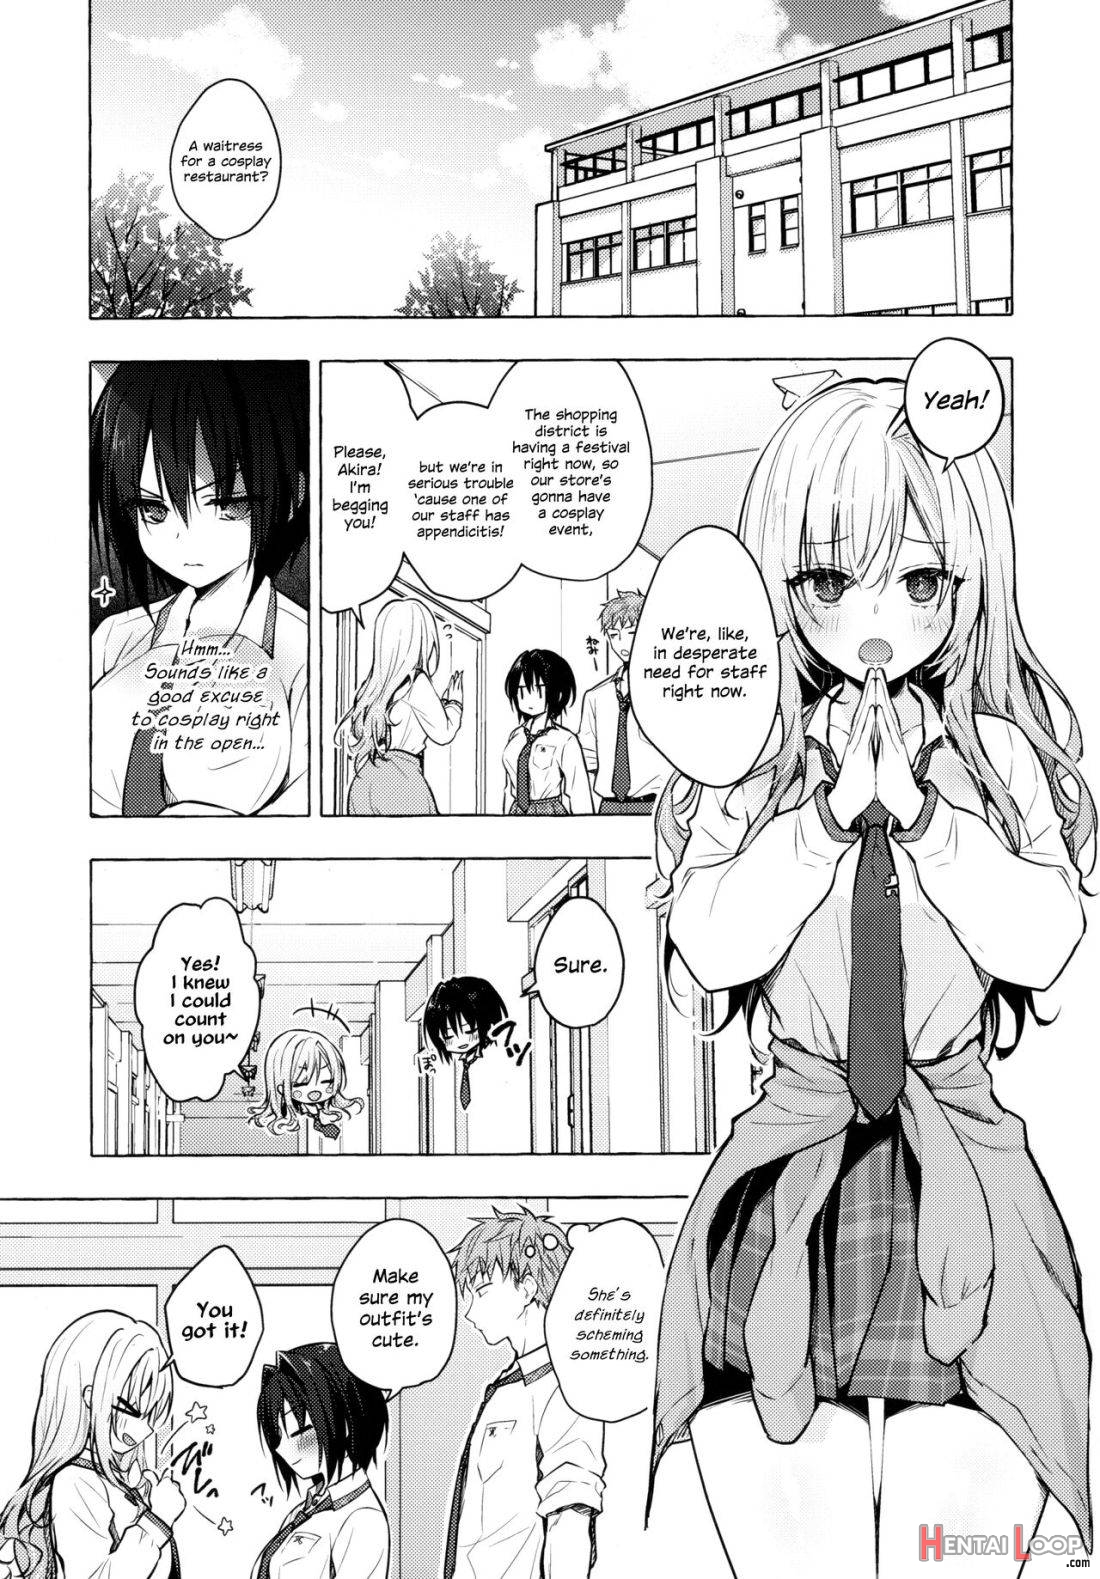 TS Akira-kun no Seiseikatsu 6 page 3